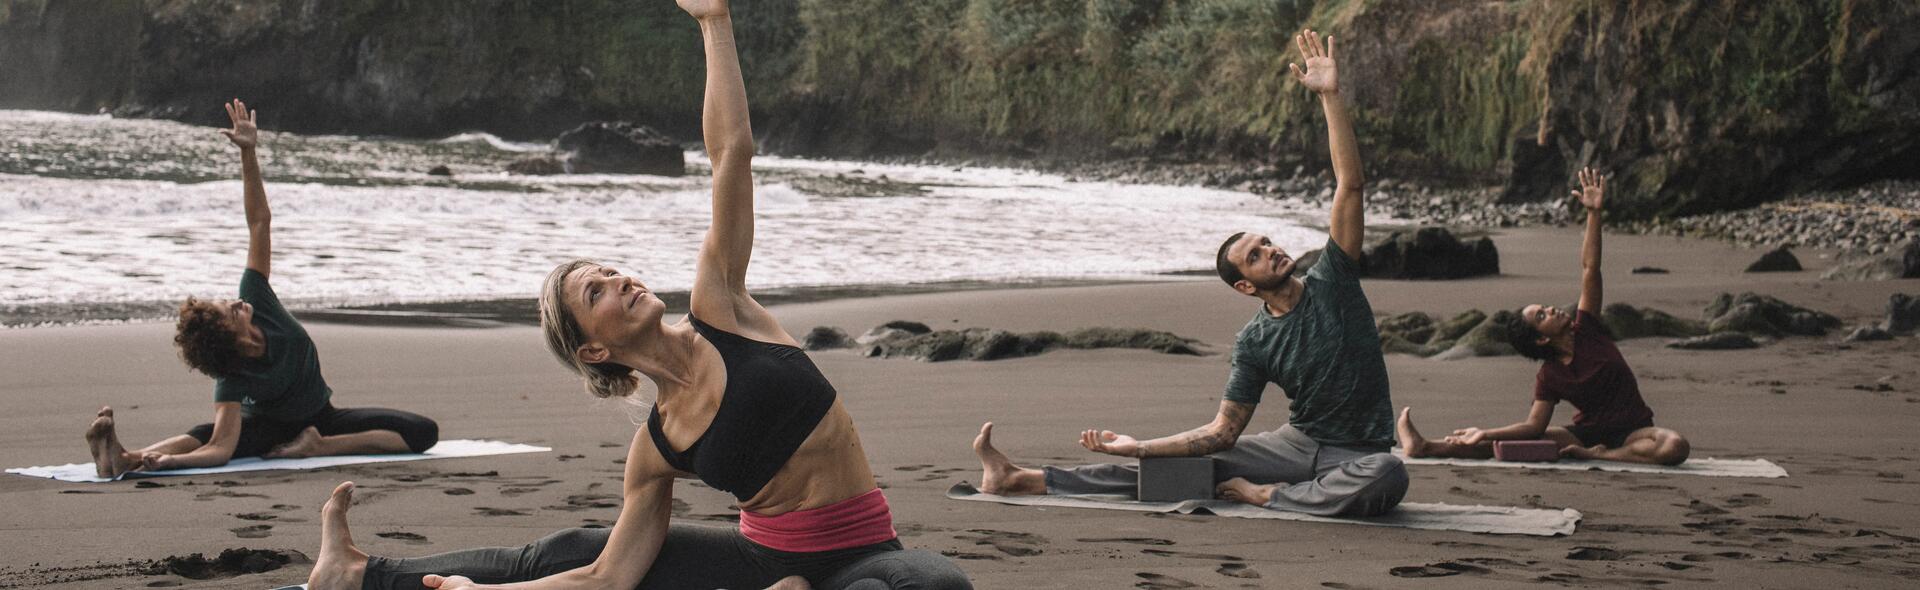 conselho 6 boas razões para praticar yoga teasing